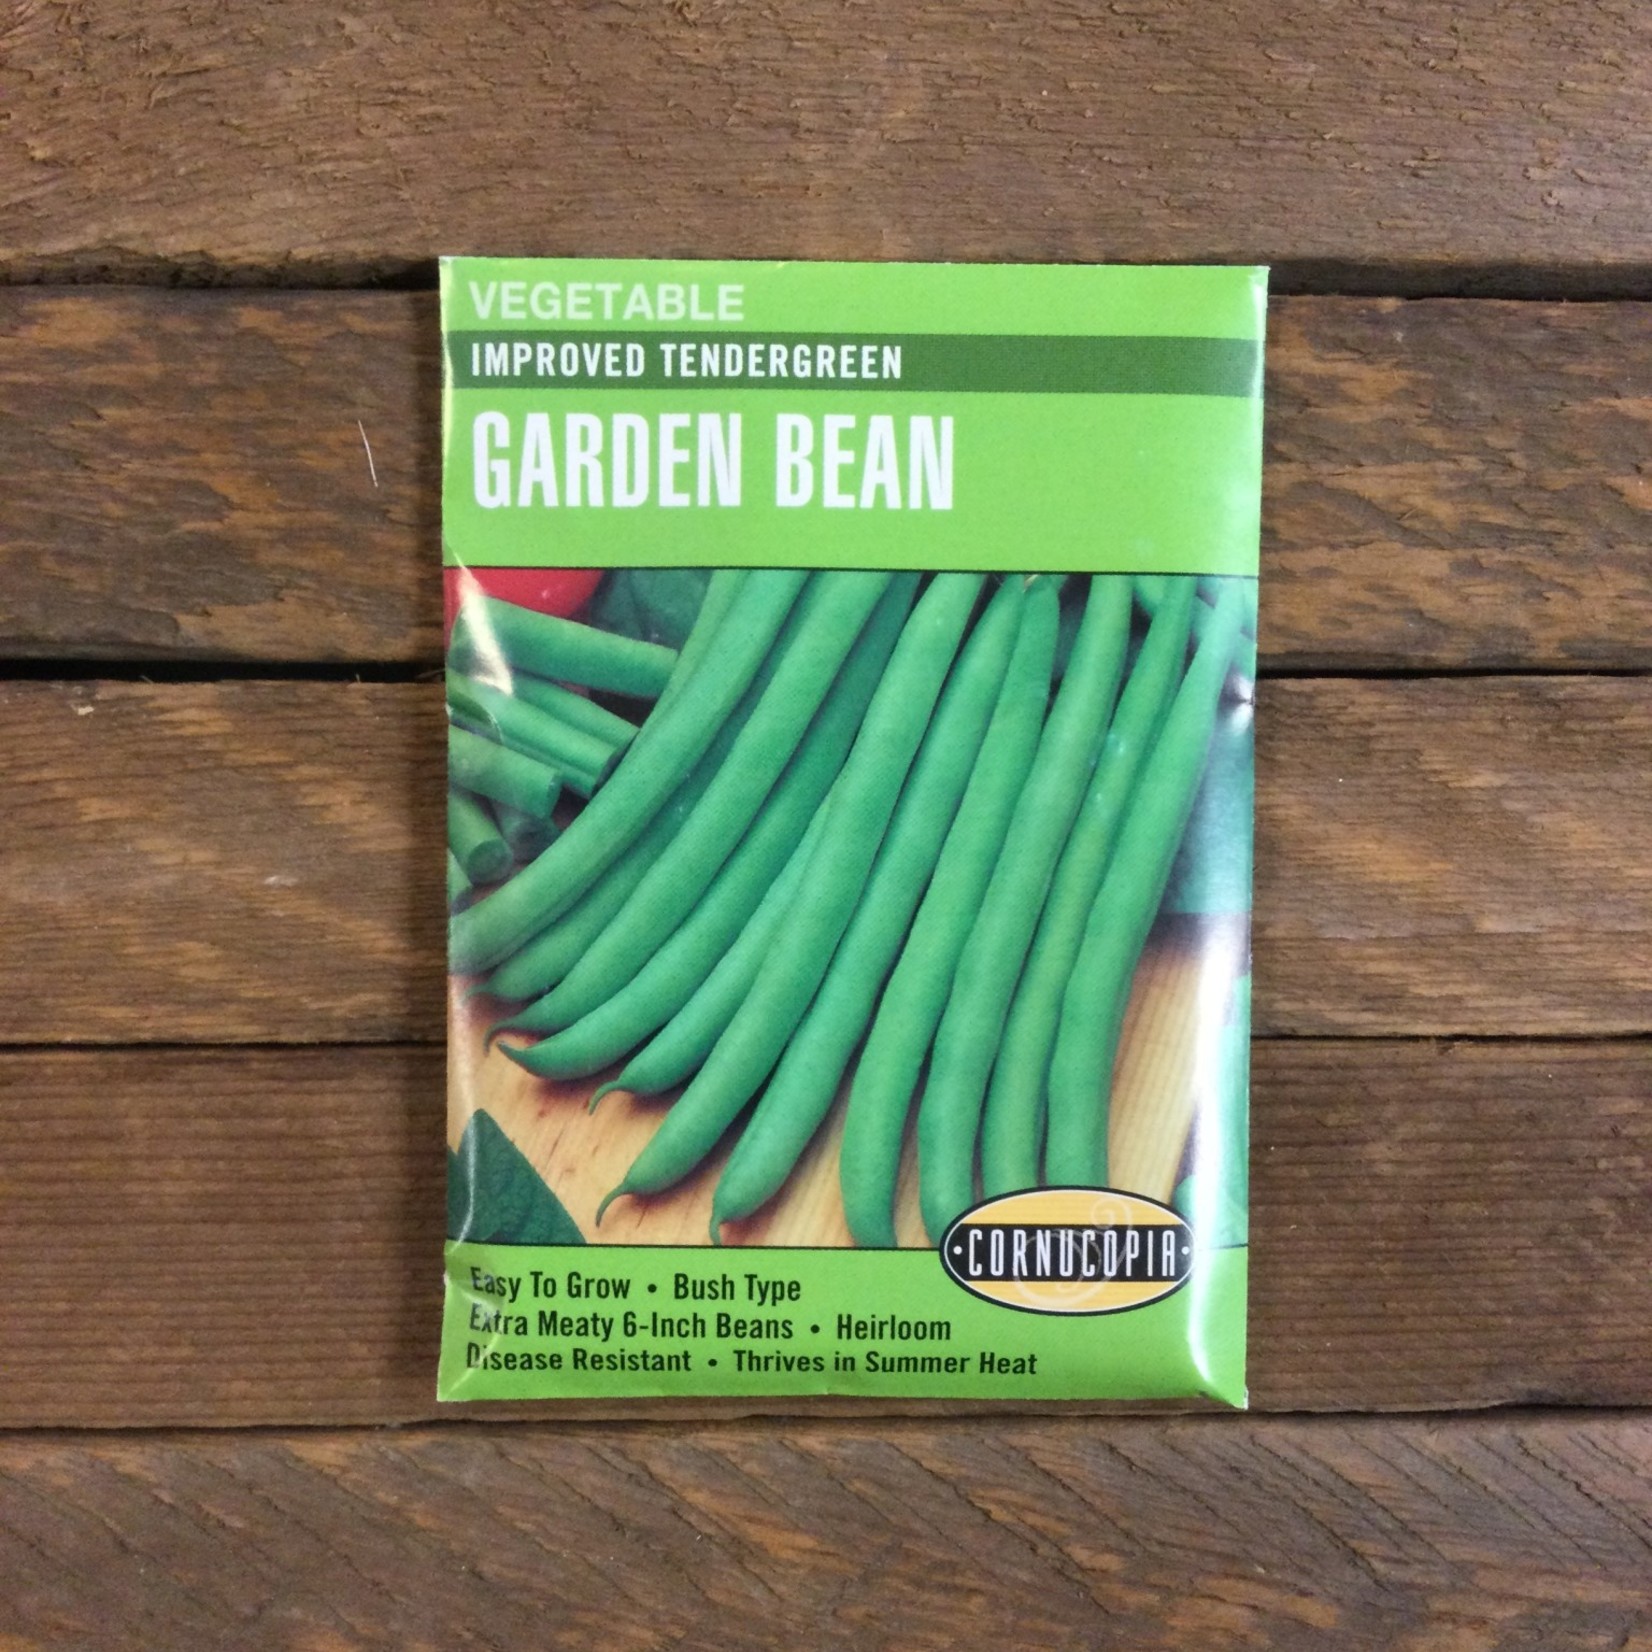 Cornucopia Bean Bush Tendergreen Improved